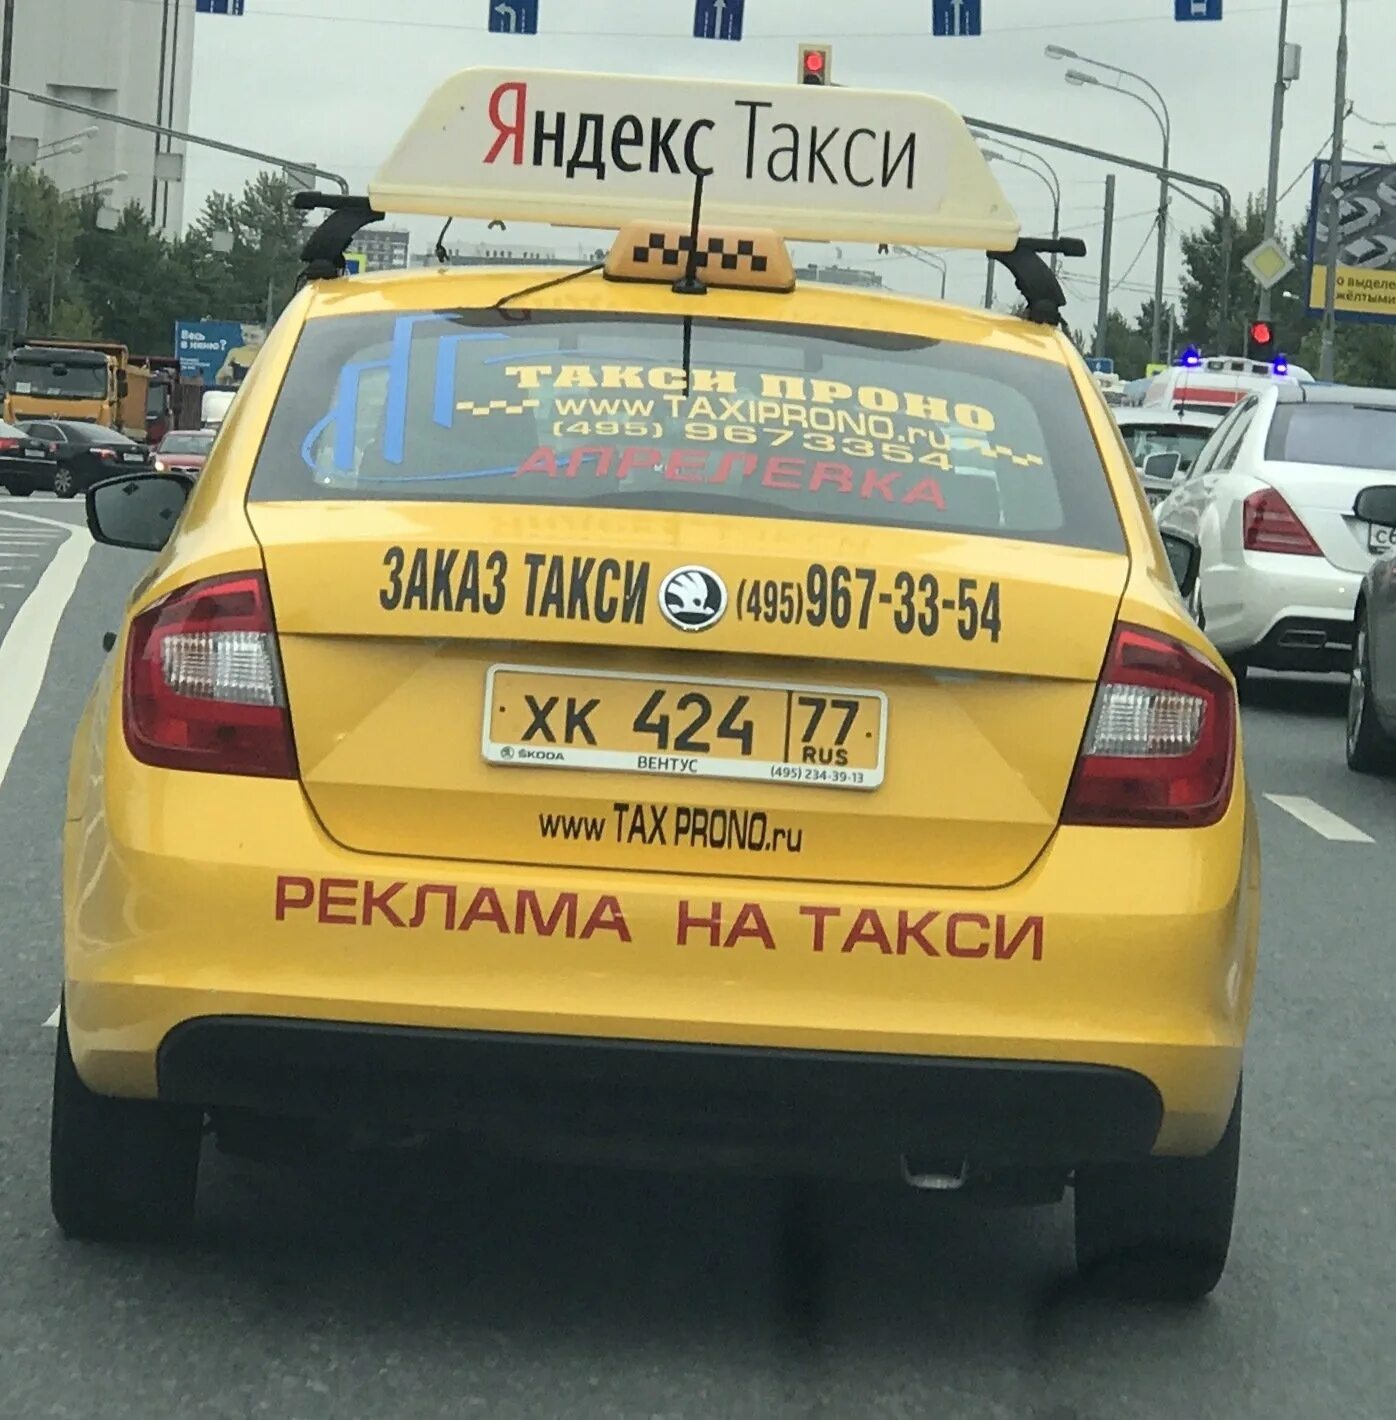 Нужно такси заказывать. Такси. Такси прикол. Надпись такси.